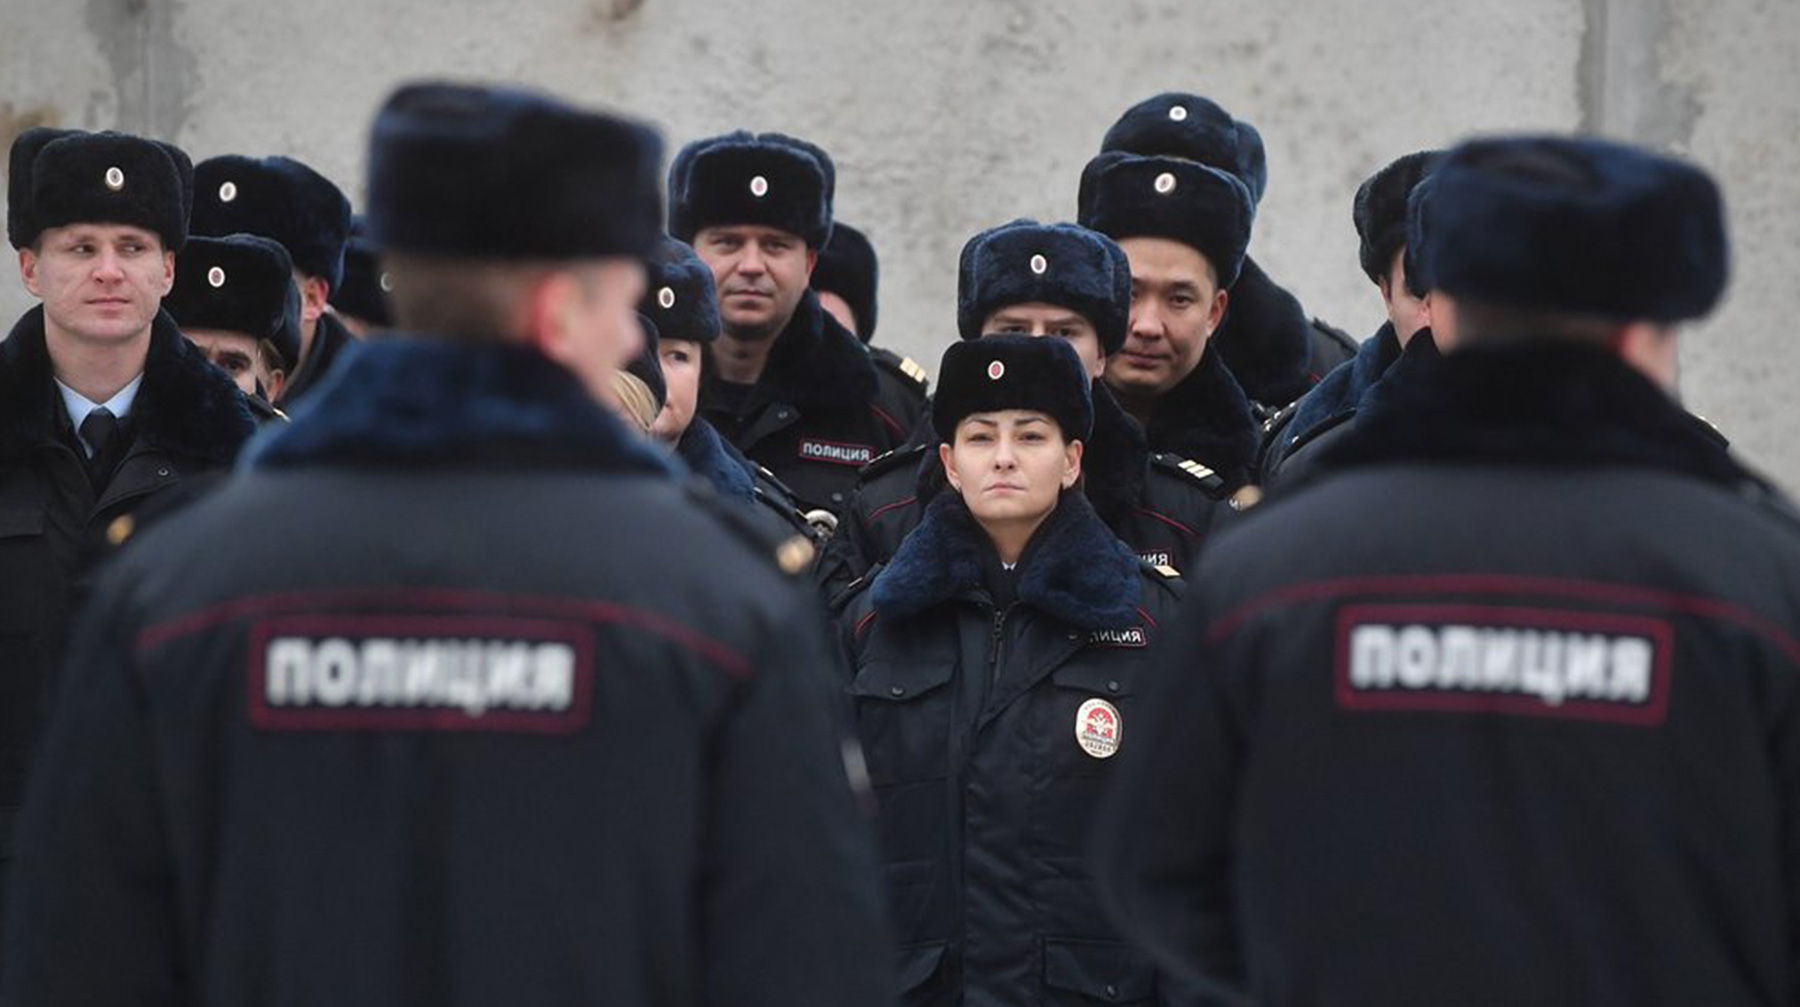 МВД также предложило наделить полицейских правом вскрывать автомобили граждан Фото: © Агенство Москва / Киселев Сергей